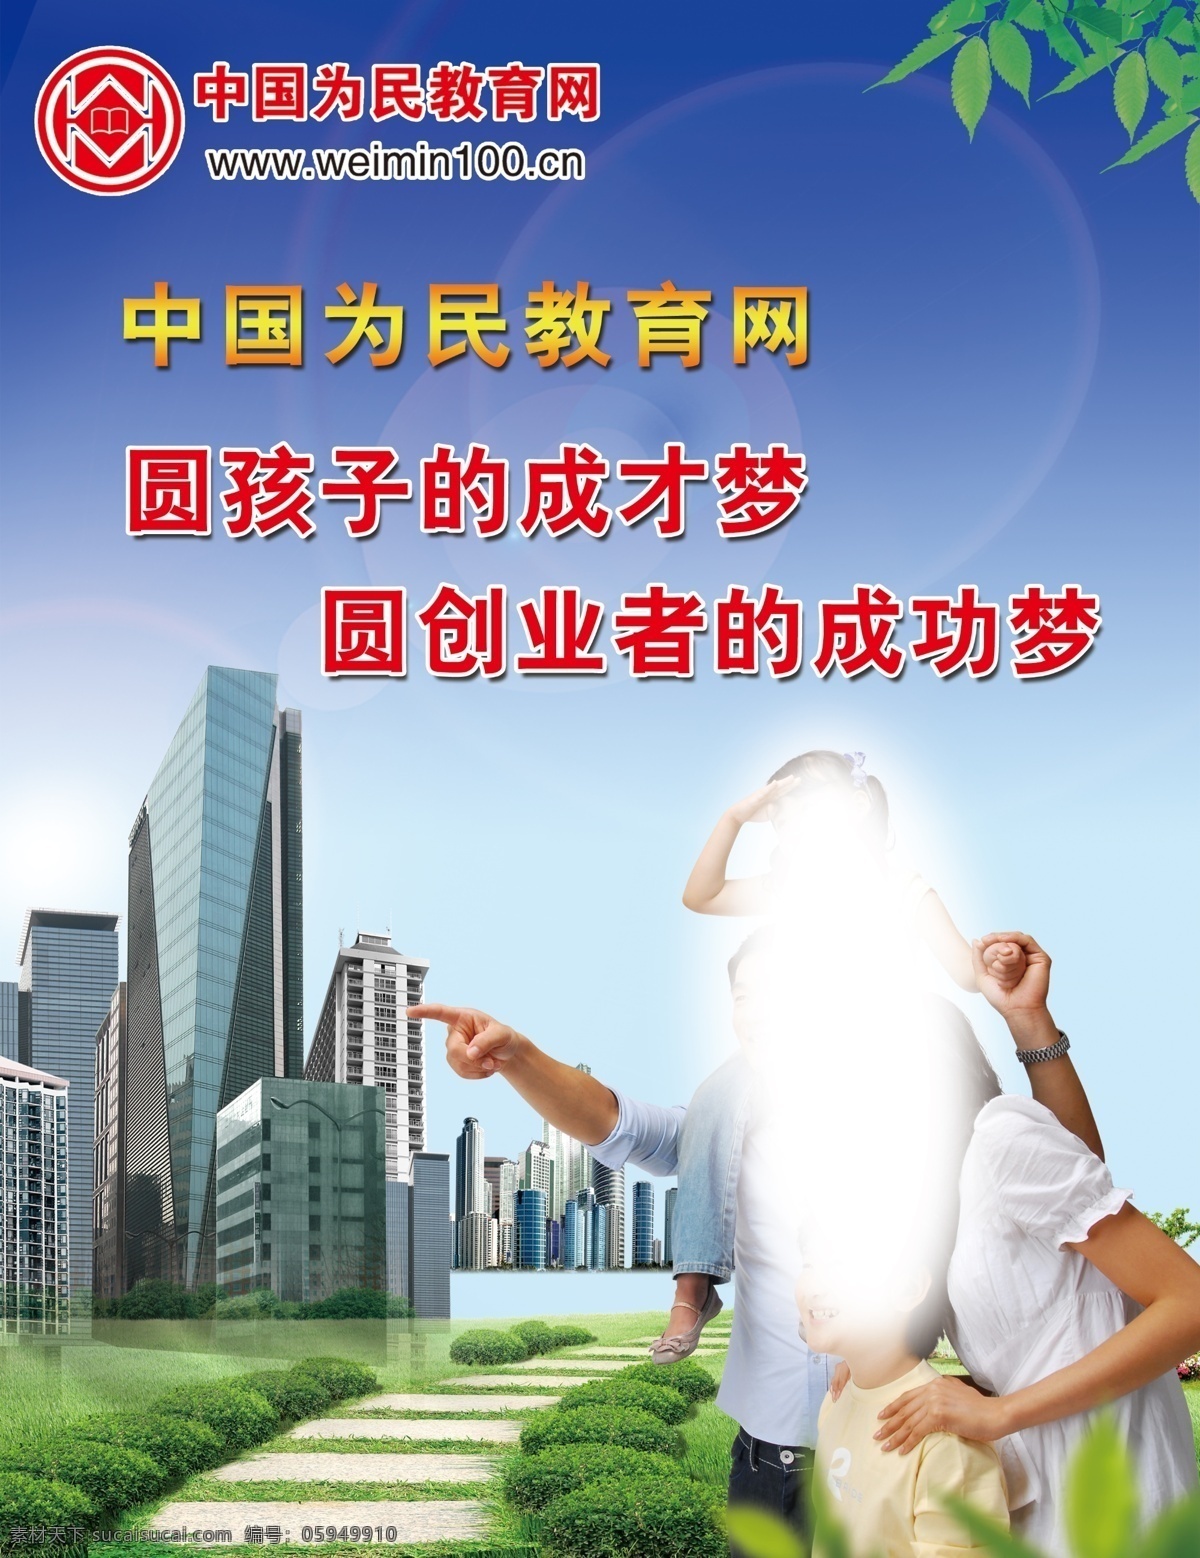 中国 为民 教育网 为民教育网 蓝色背景 亲子照 圆孩子梦 圆创业梦 海报 彩页 喷绘 建筑